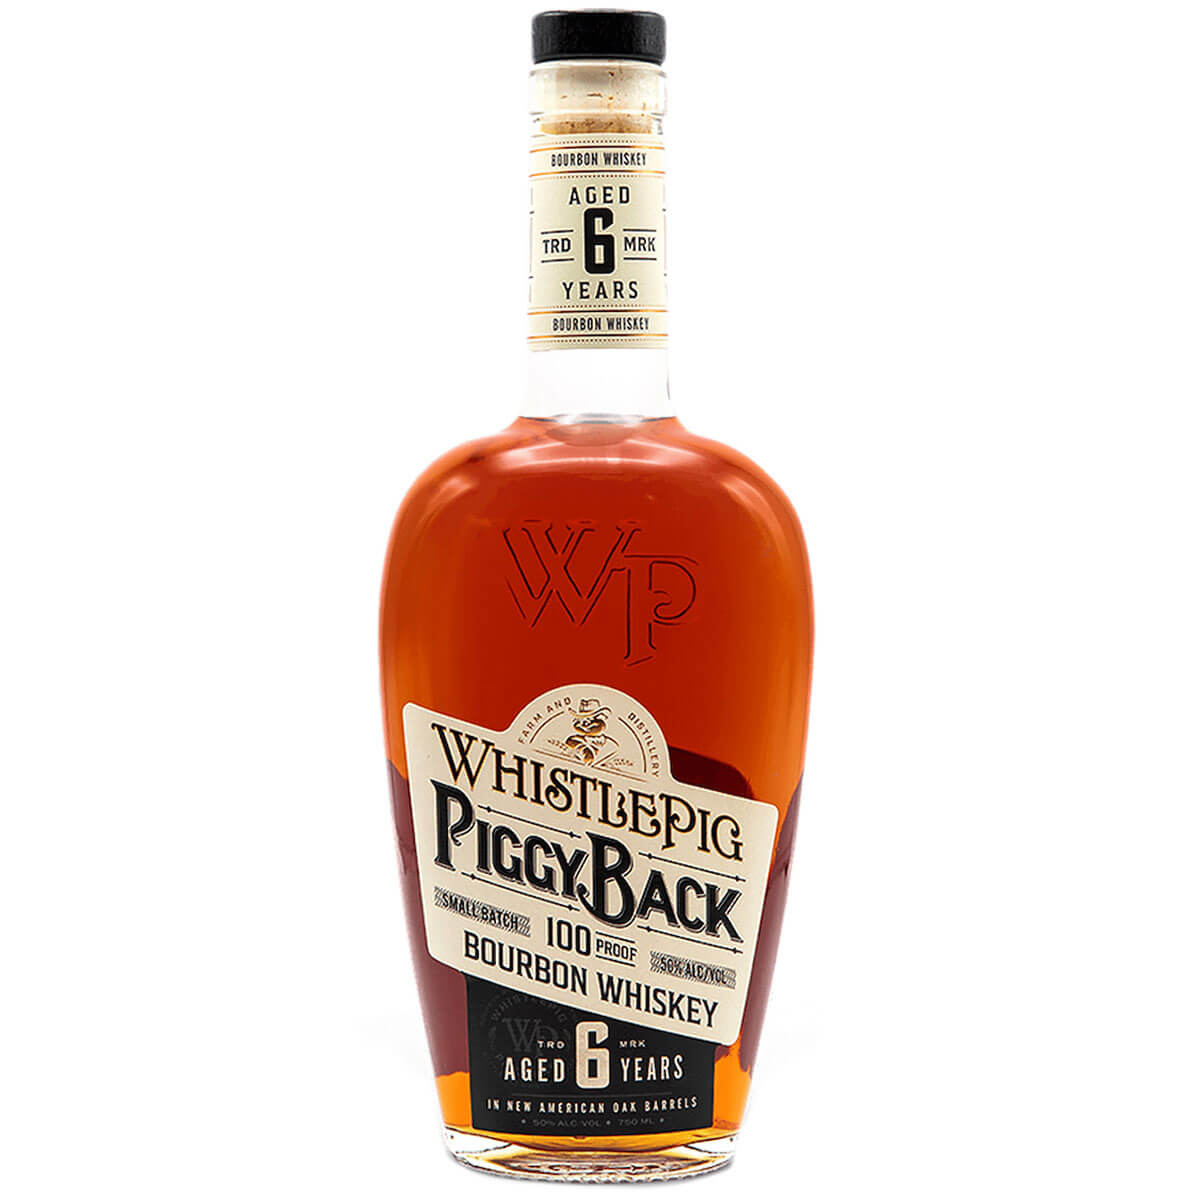 WhistlePig PiggyBack Bourbon bottle